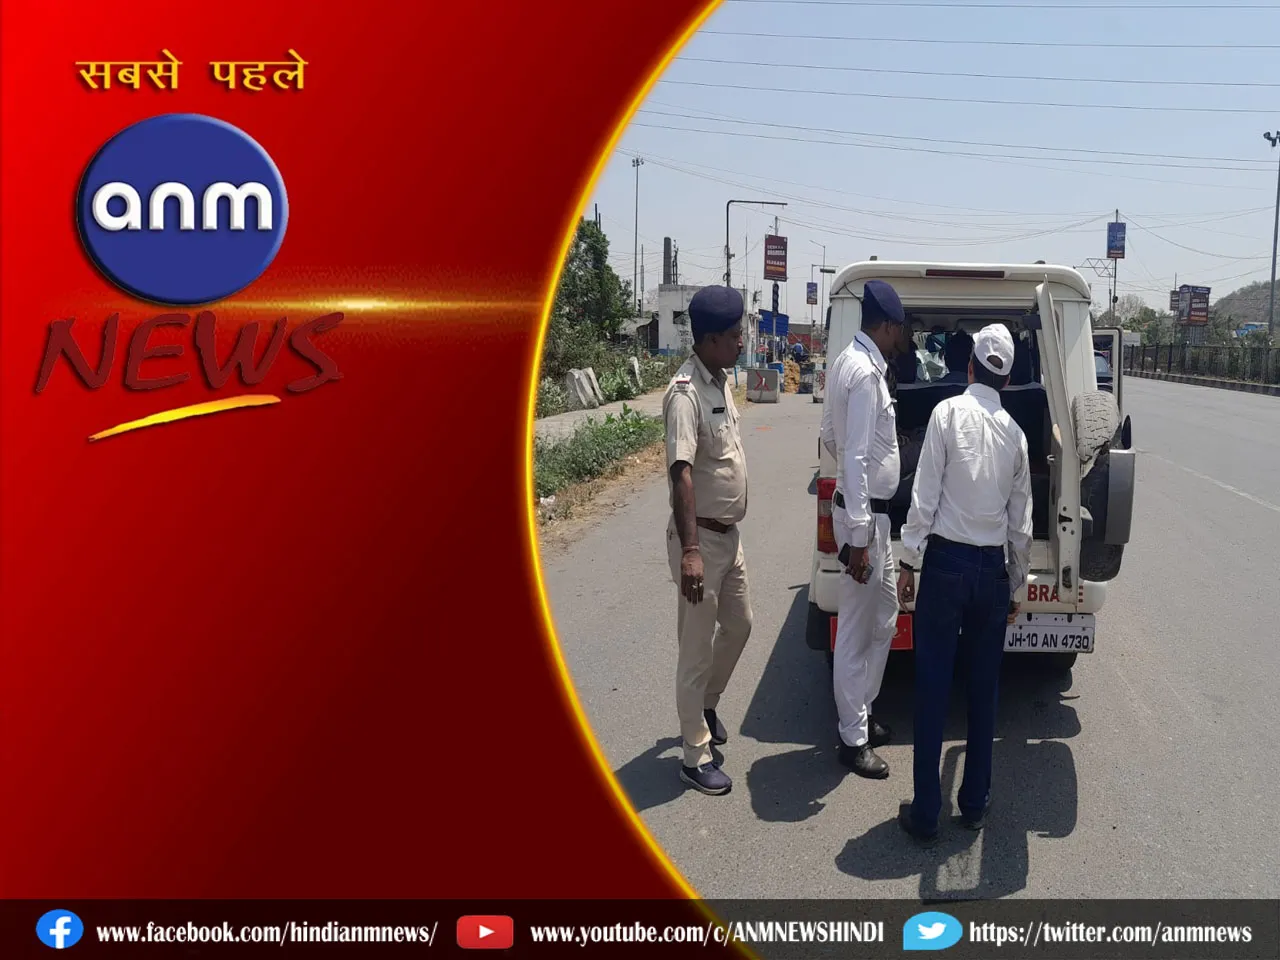 चुनाव के मद्देनजर Bengal-Jharkhand सीमा पर पहुँचे निर्वाचन आयोग के अधिकारी, पुलिस के साथ की गई वाहनों की जांच